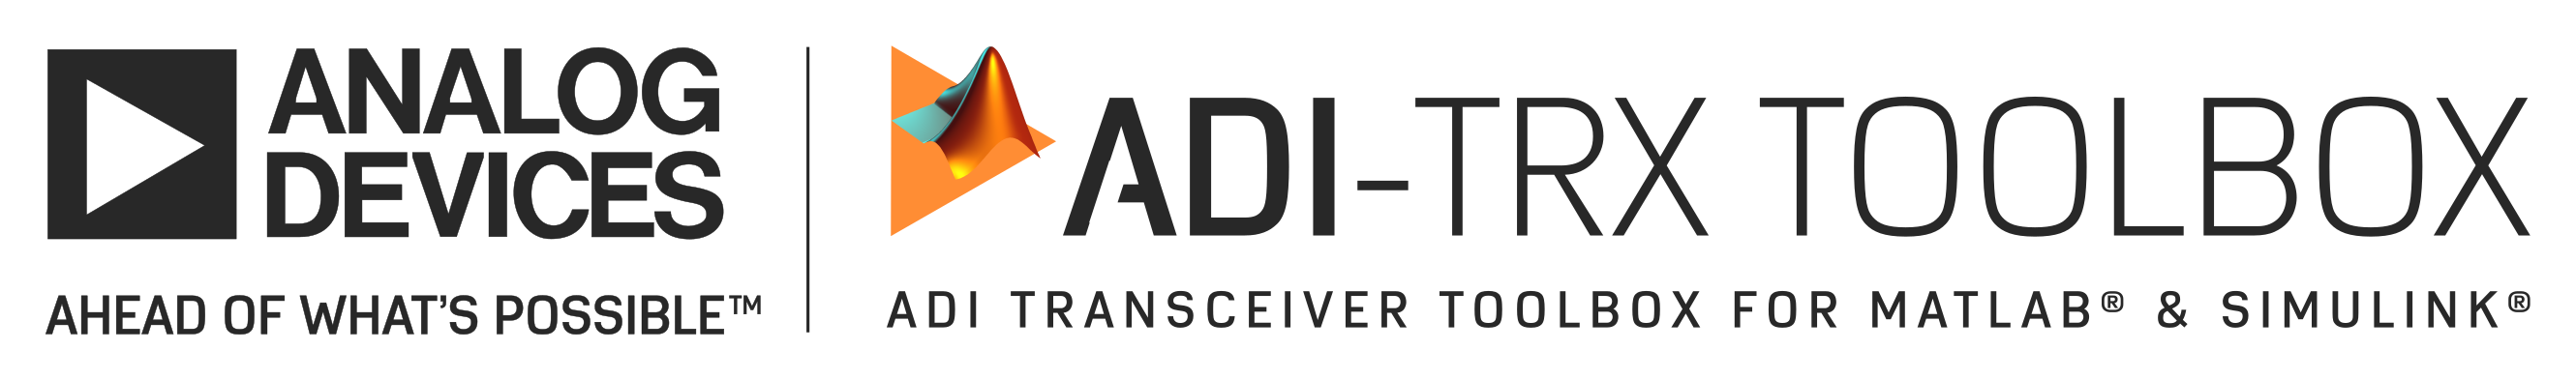 PyADI-IIO Logo